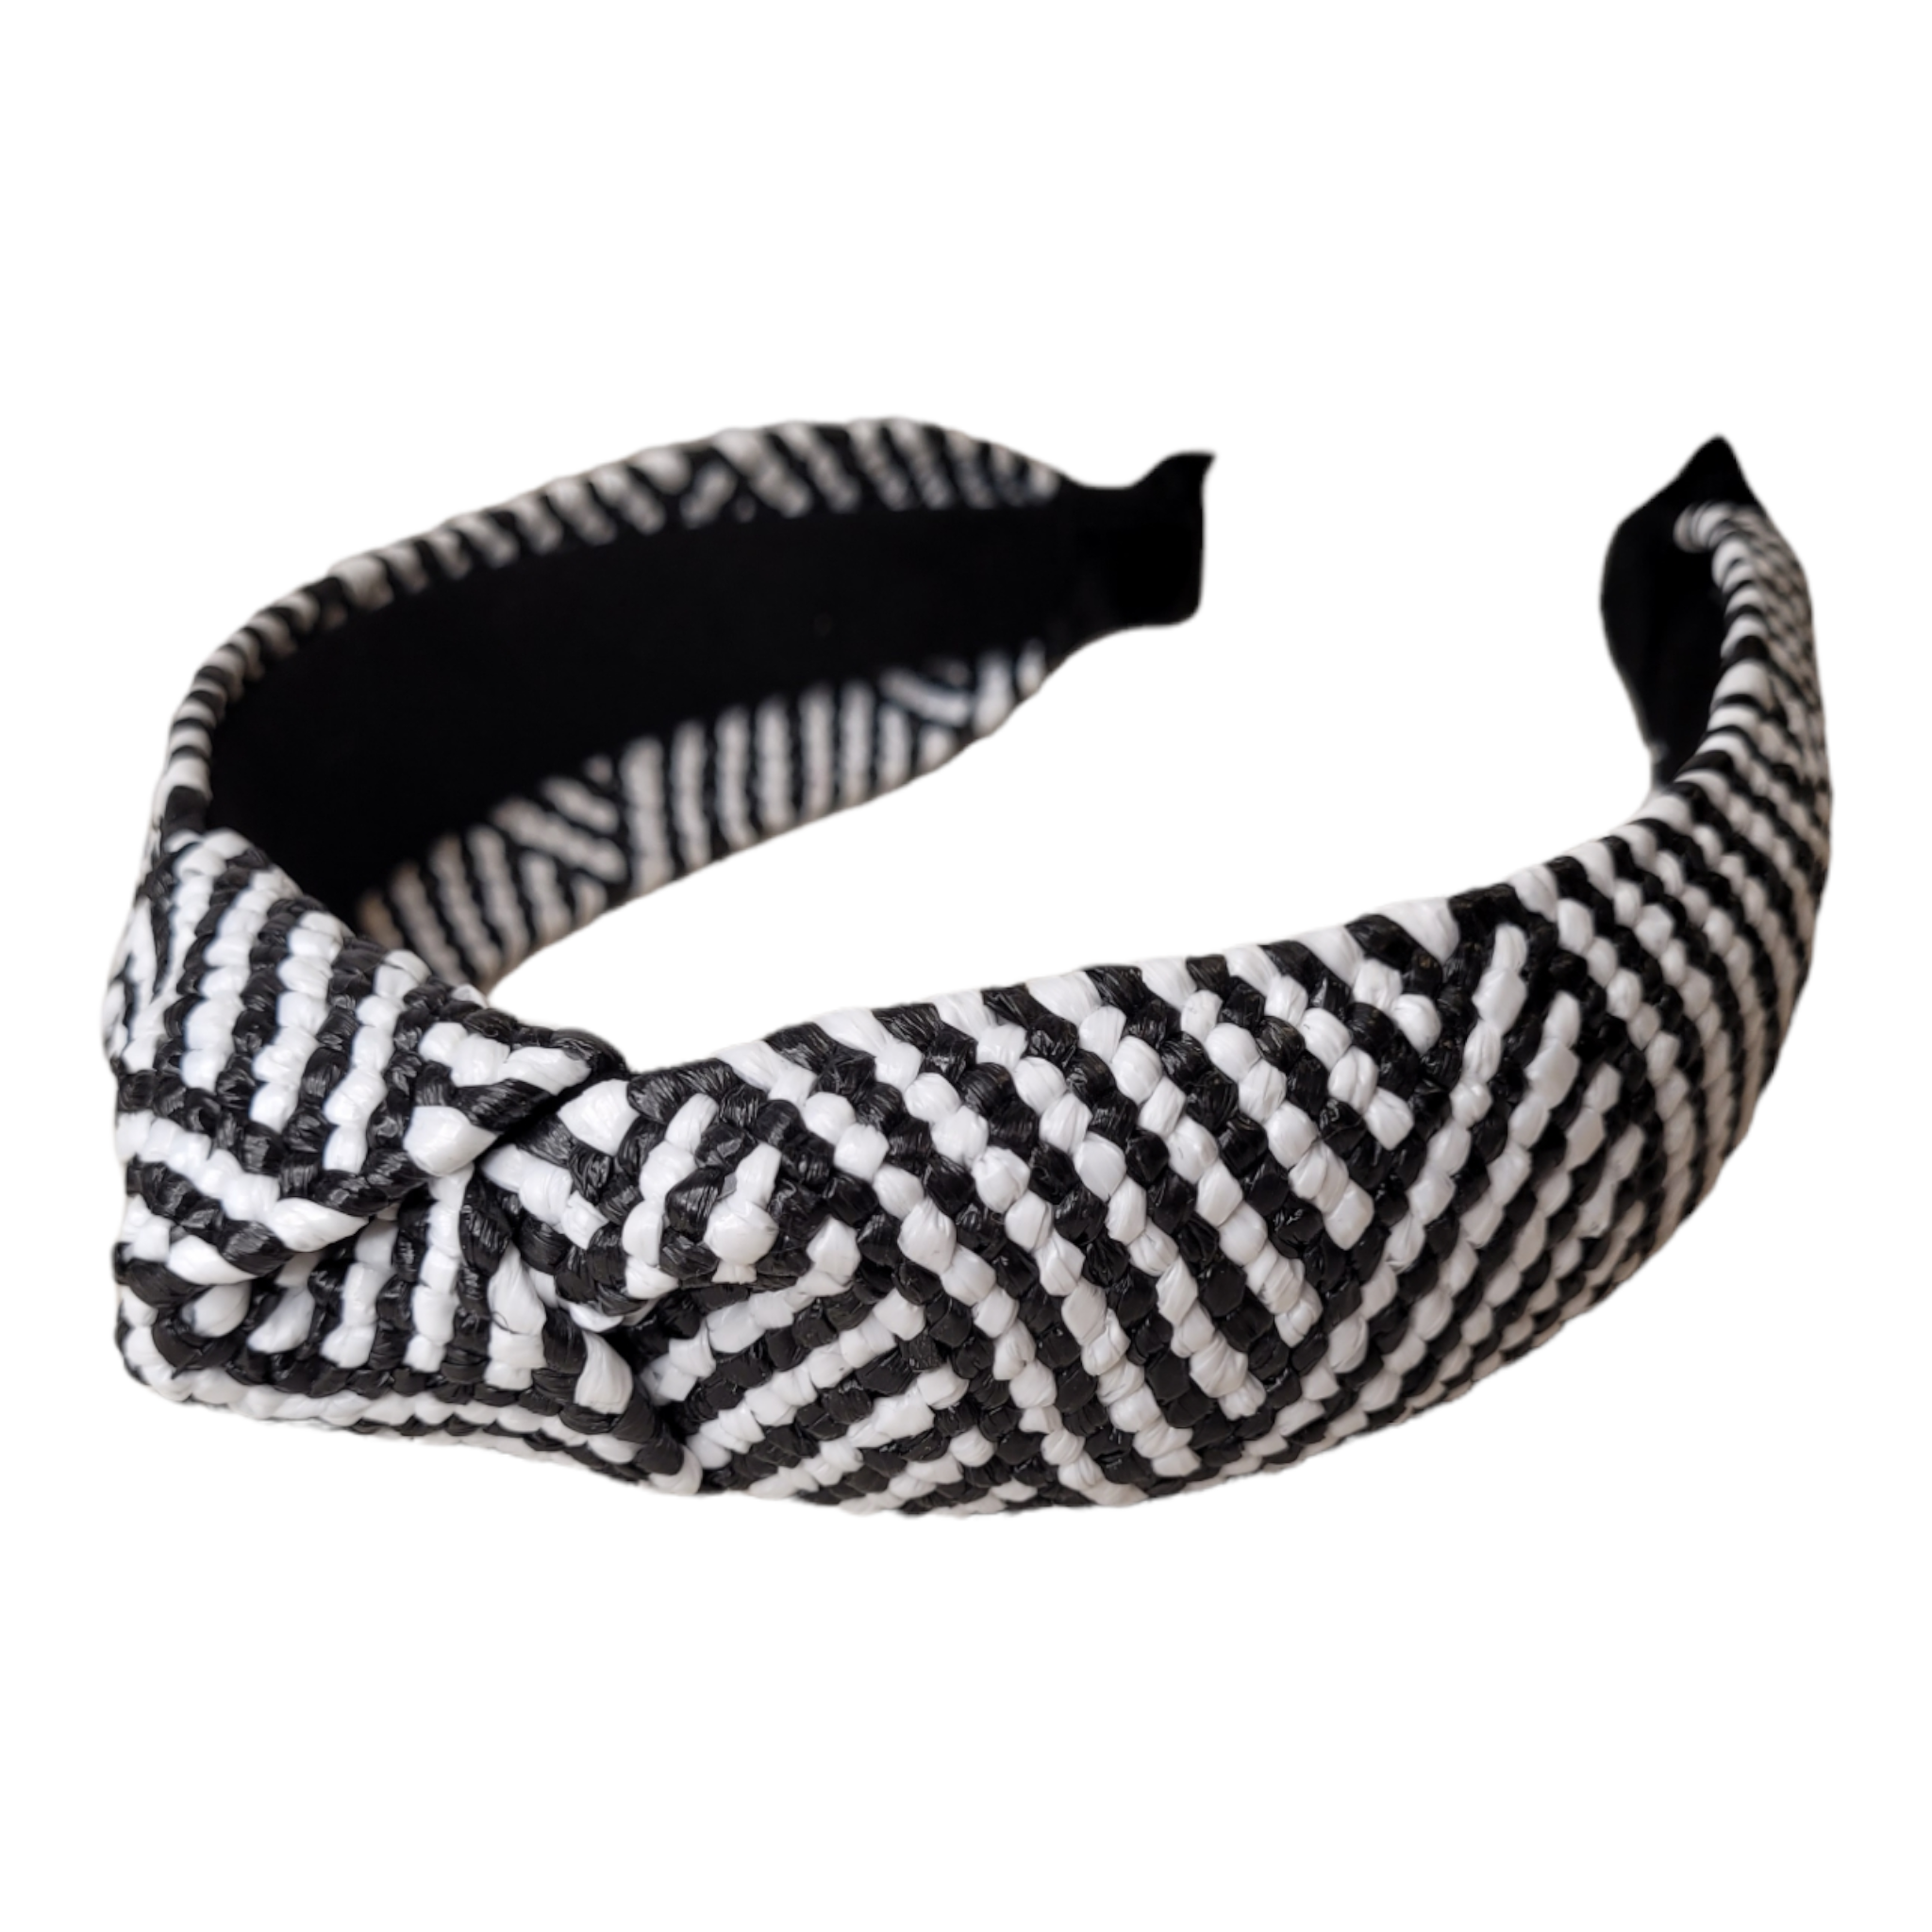 Black & White Raffia Top Knot Headband-Accessories-LouisGeorge Boutique-LouisGeorge Boutique, Women’s Fashion Boutique Located in Trussville, Alabama